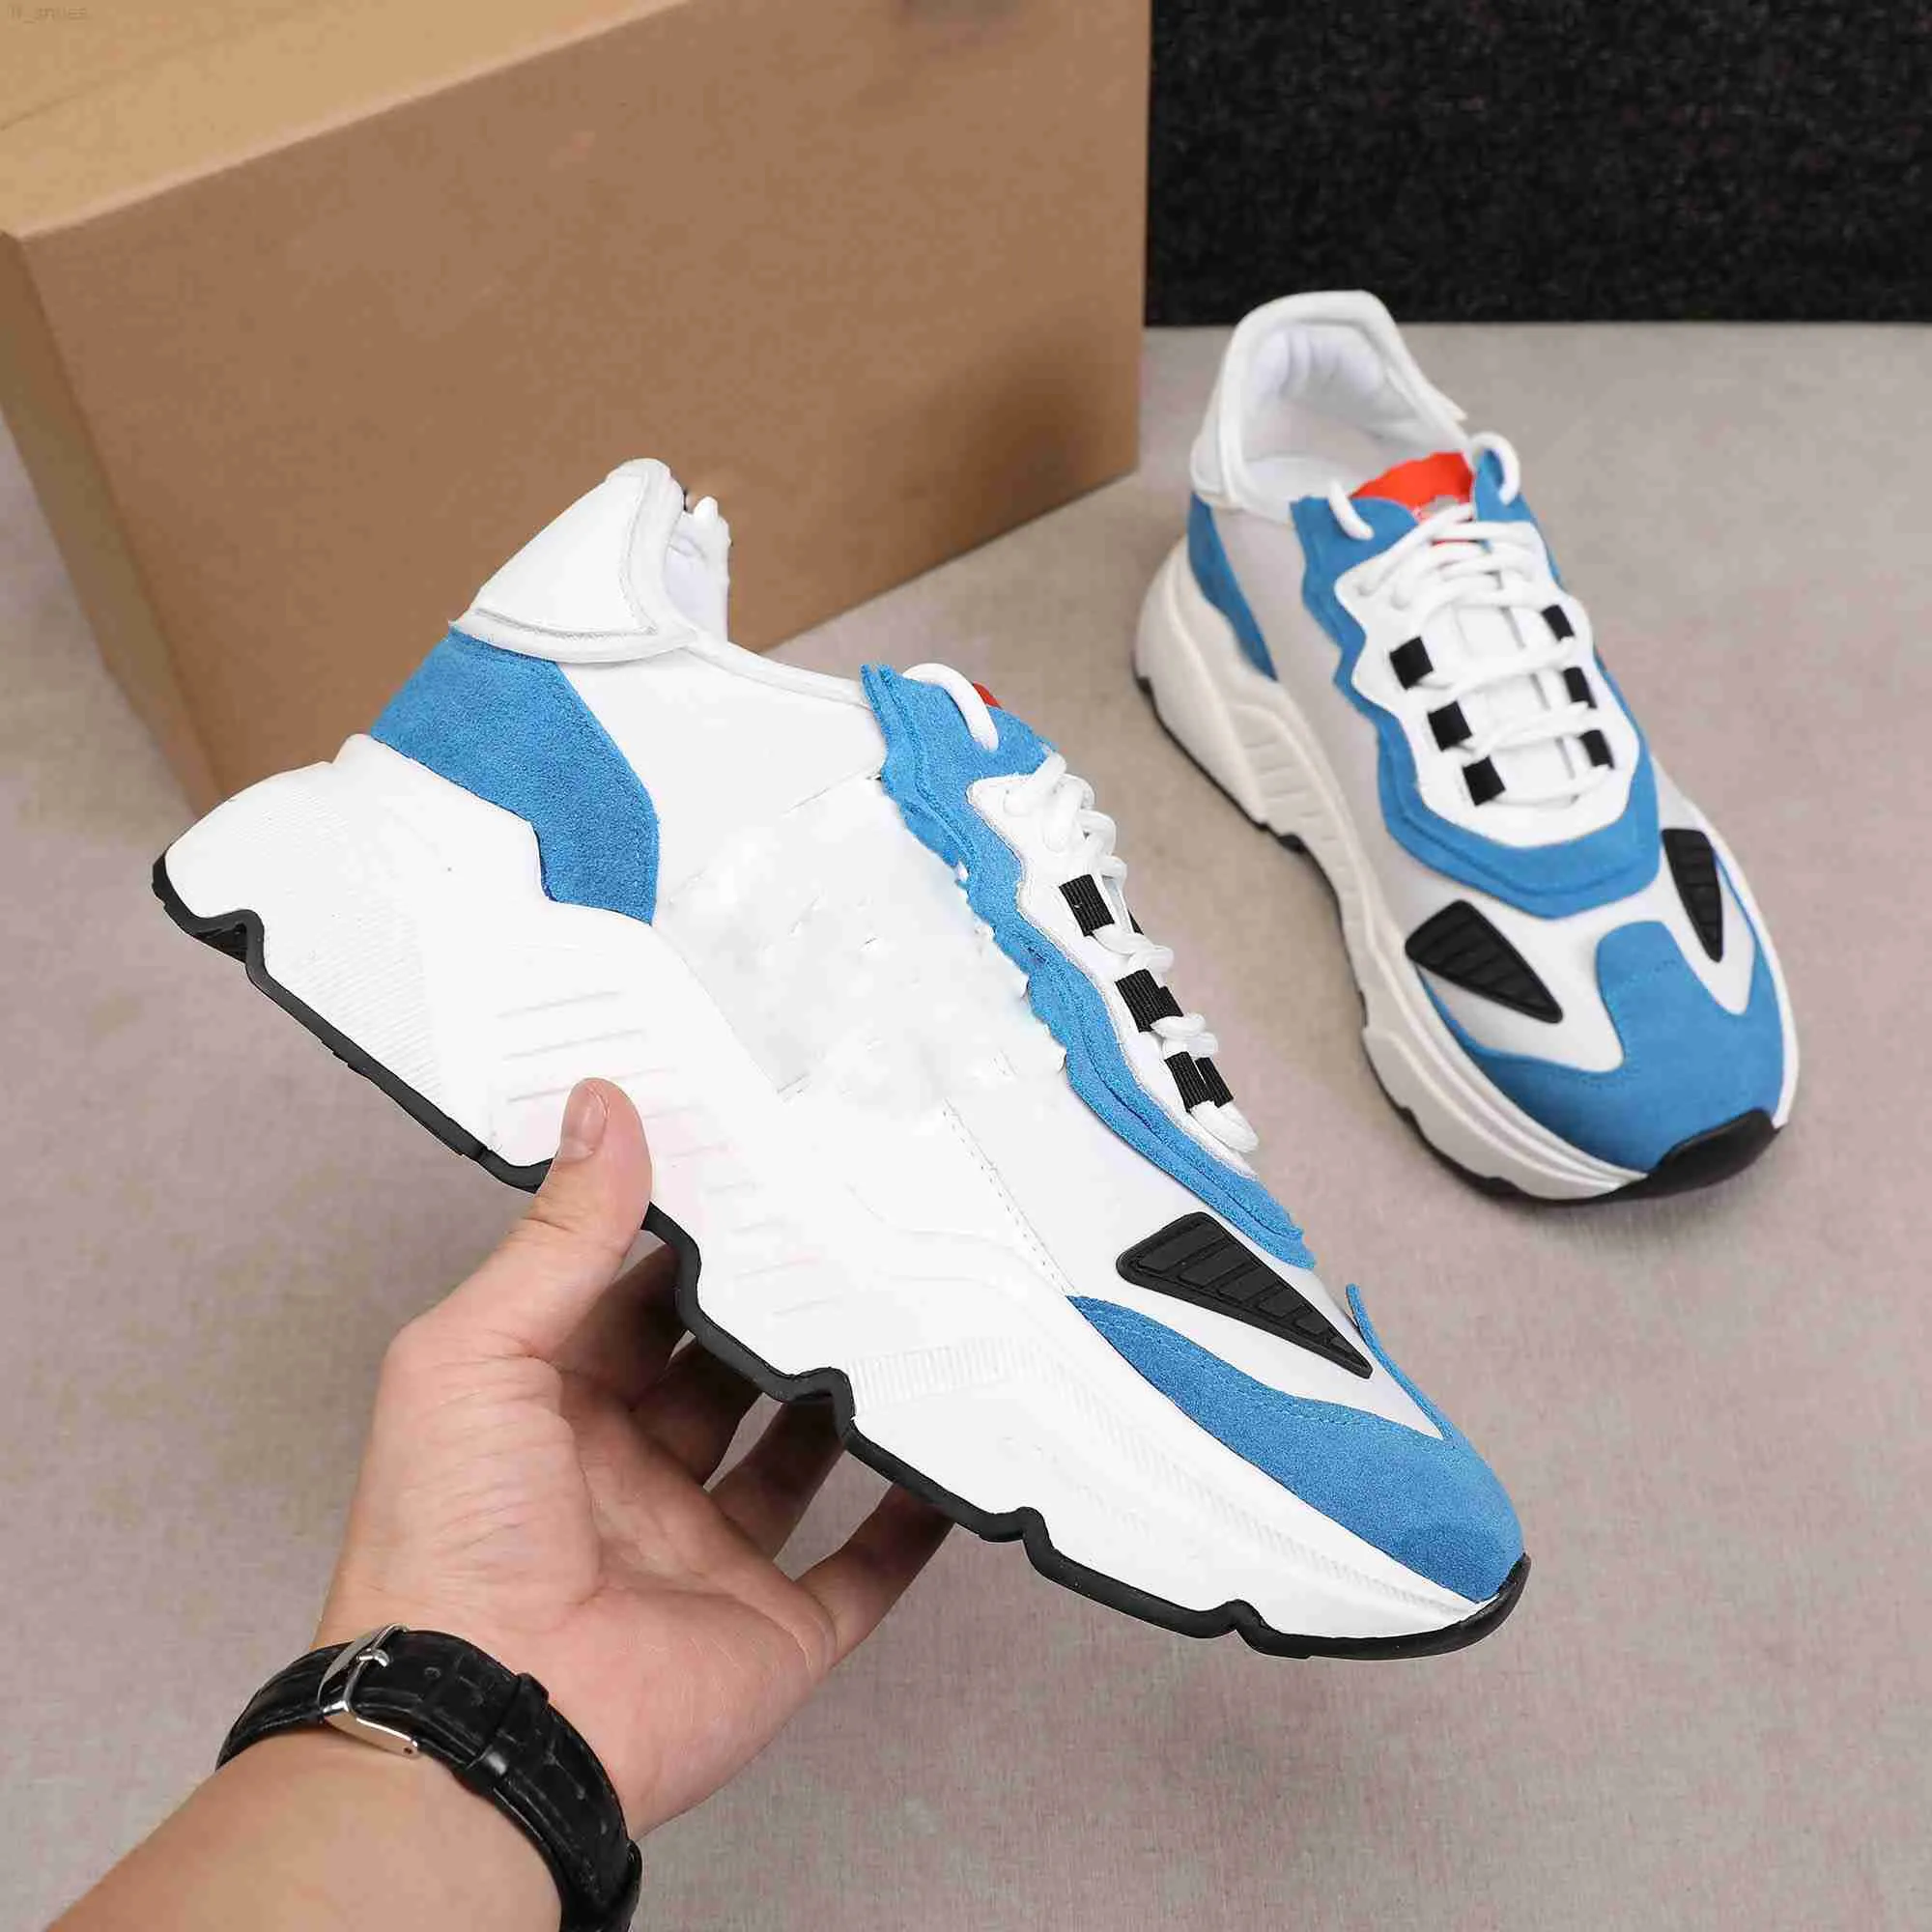 2023 Günlük Ayakkabılar Koşu Sneakers Erkek Ayakkabı Flats Modeli Beyaz Moda Eğitmen Açık Kalın Alt Sneaker Kıyafet Yürüyüş Ayakkabıları Sneaker